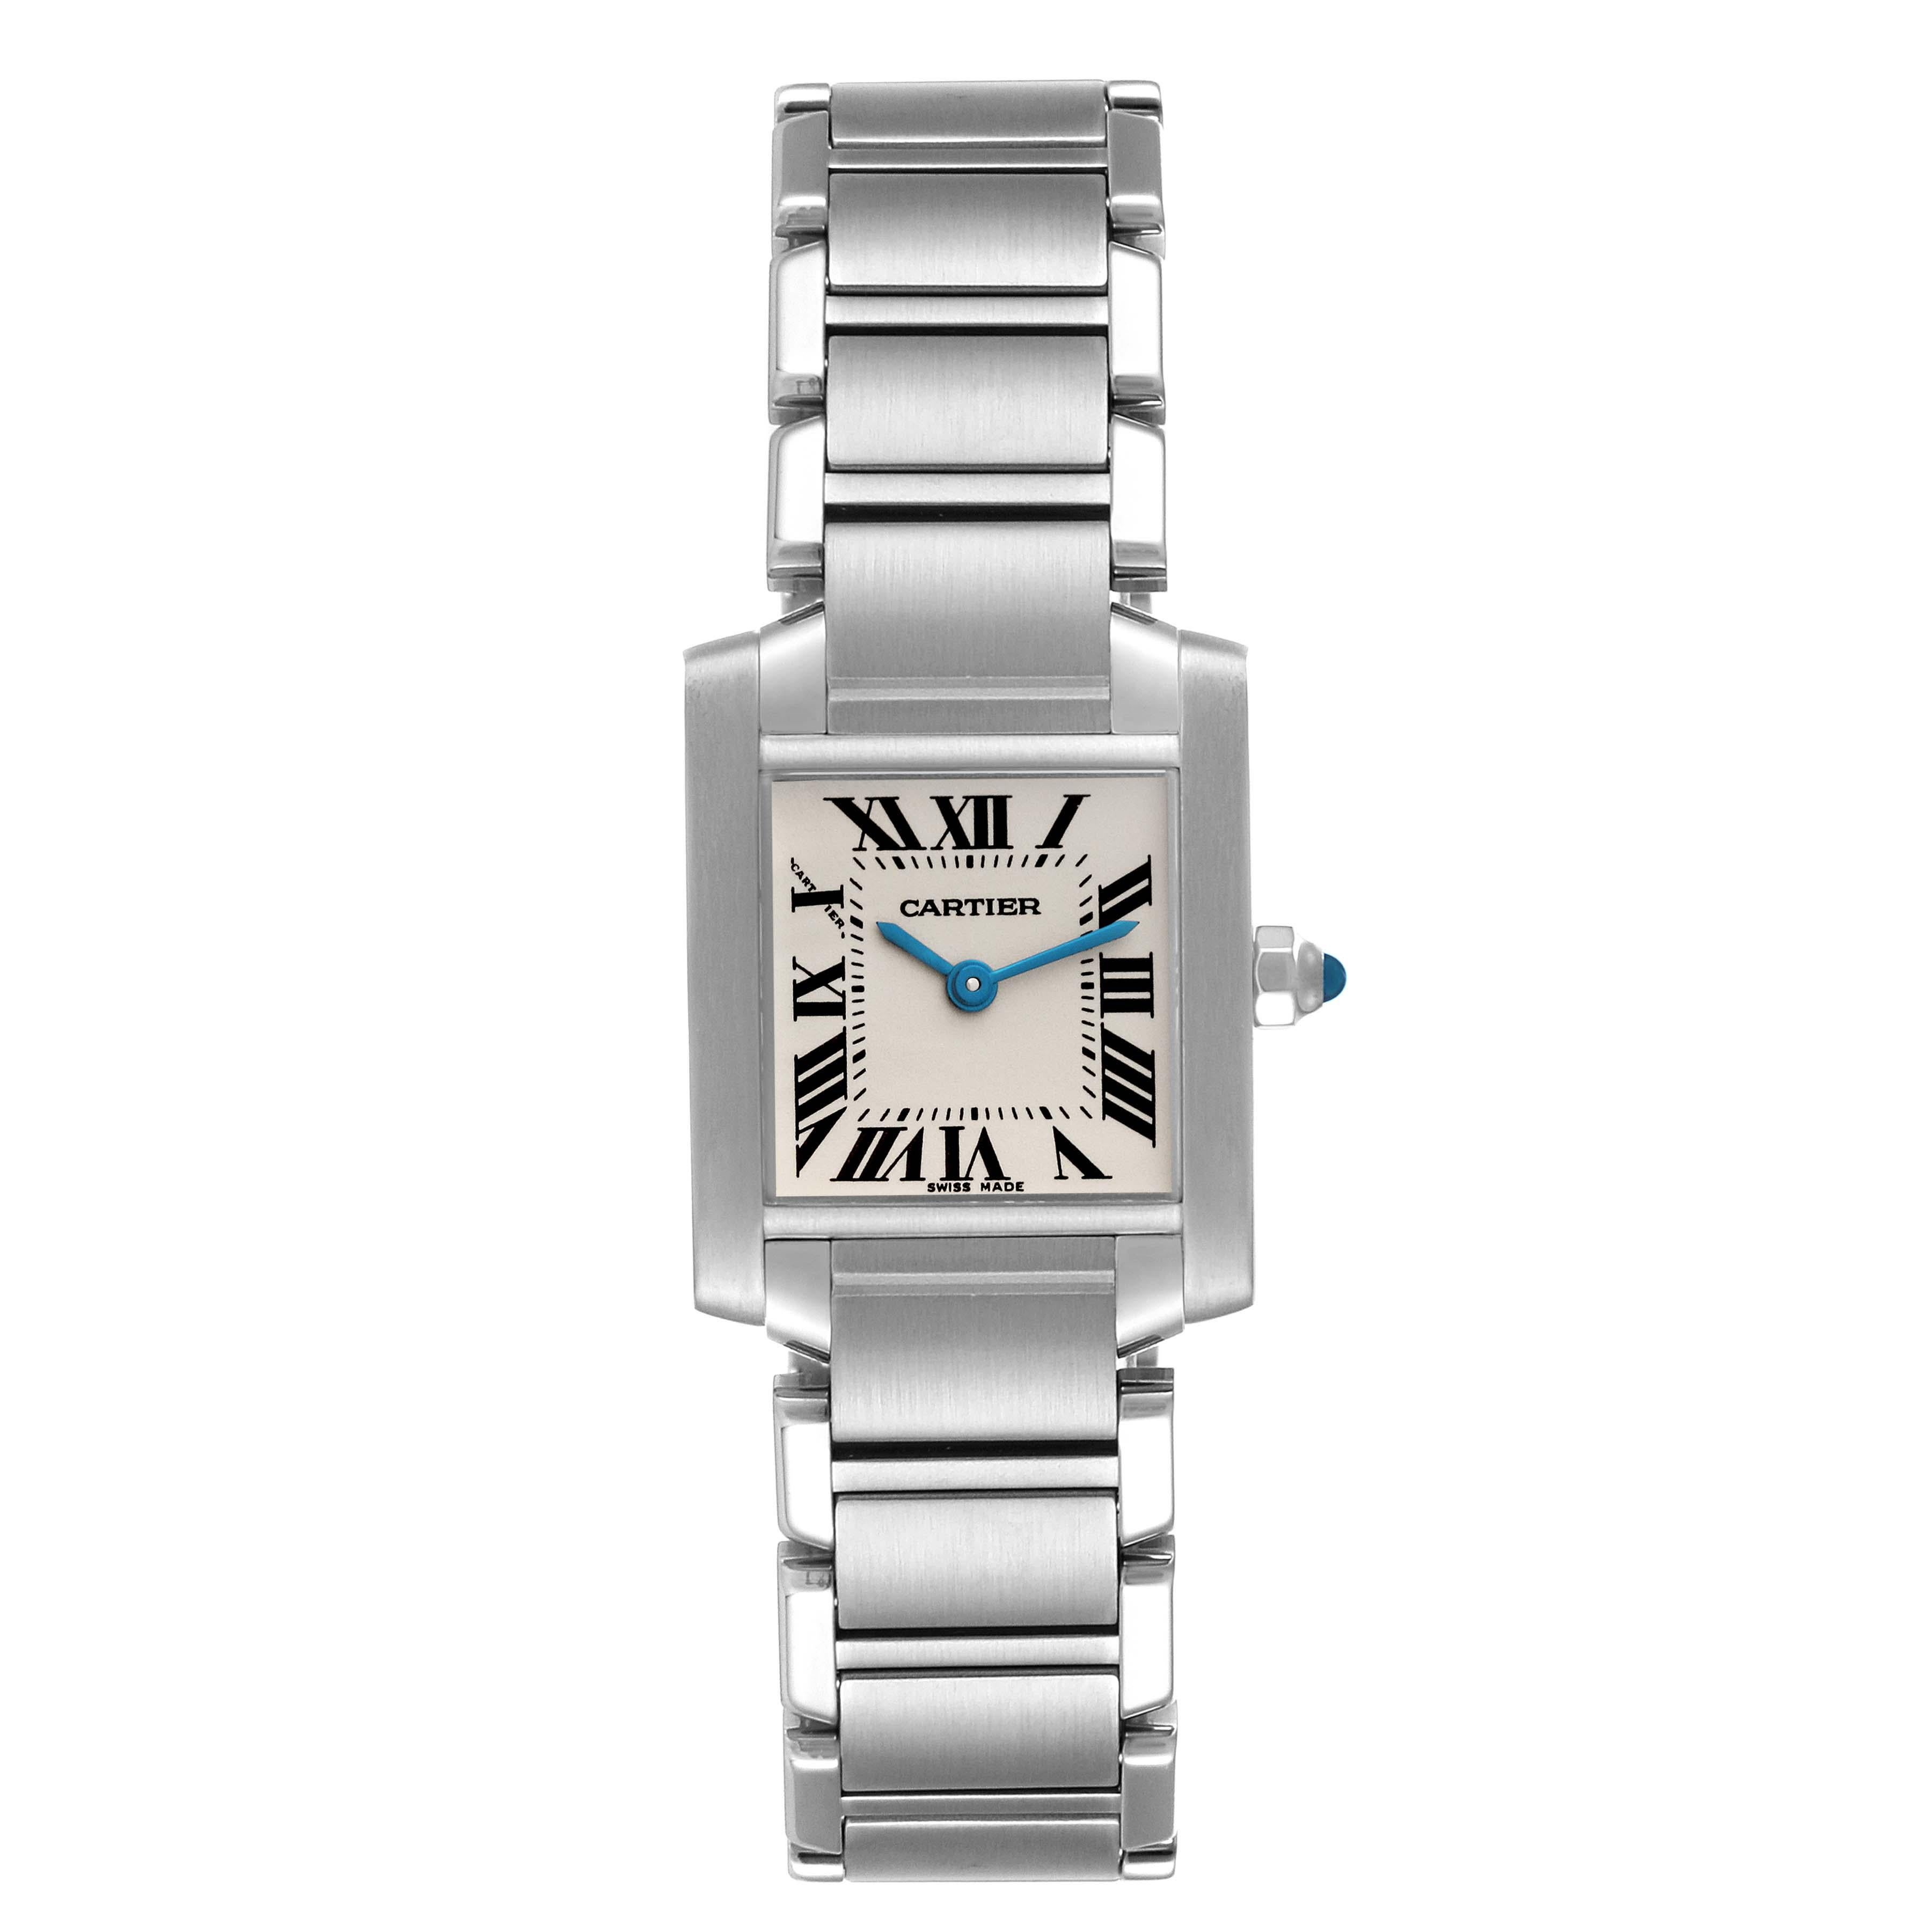 Cartier Tank Francaise Small Silver Dial Steel Ladies Watch W51008Q3. Mouvement à quartz. Boîtier rectangulaire en acier inoxydable de 20,0 x 25,0 mm. Couronne octogonale sertie d'un cabochon de spinelle bleu . Verre saphir résistant aux rayures.